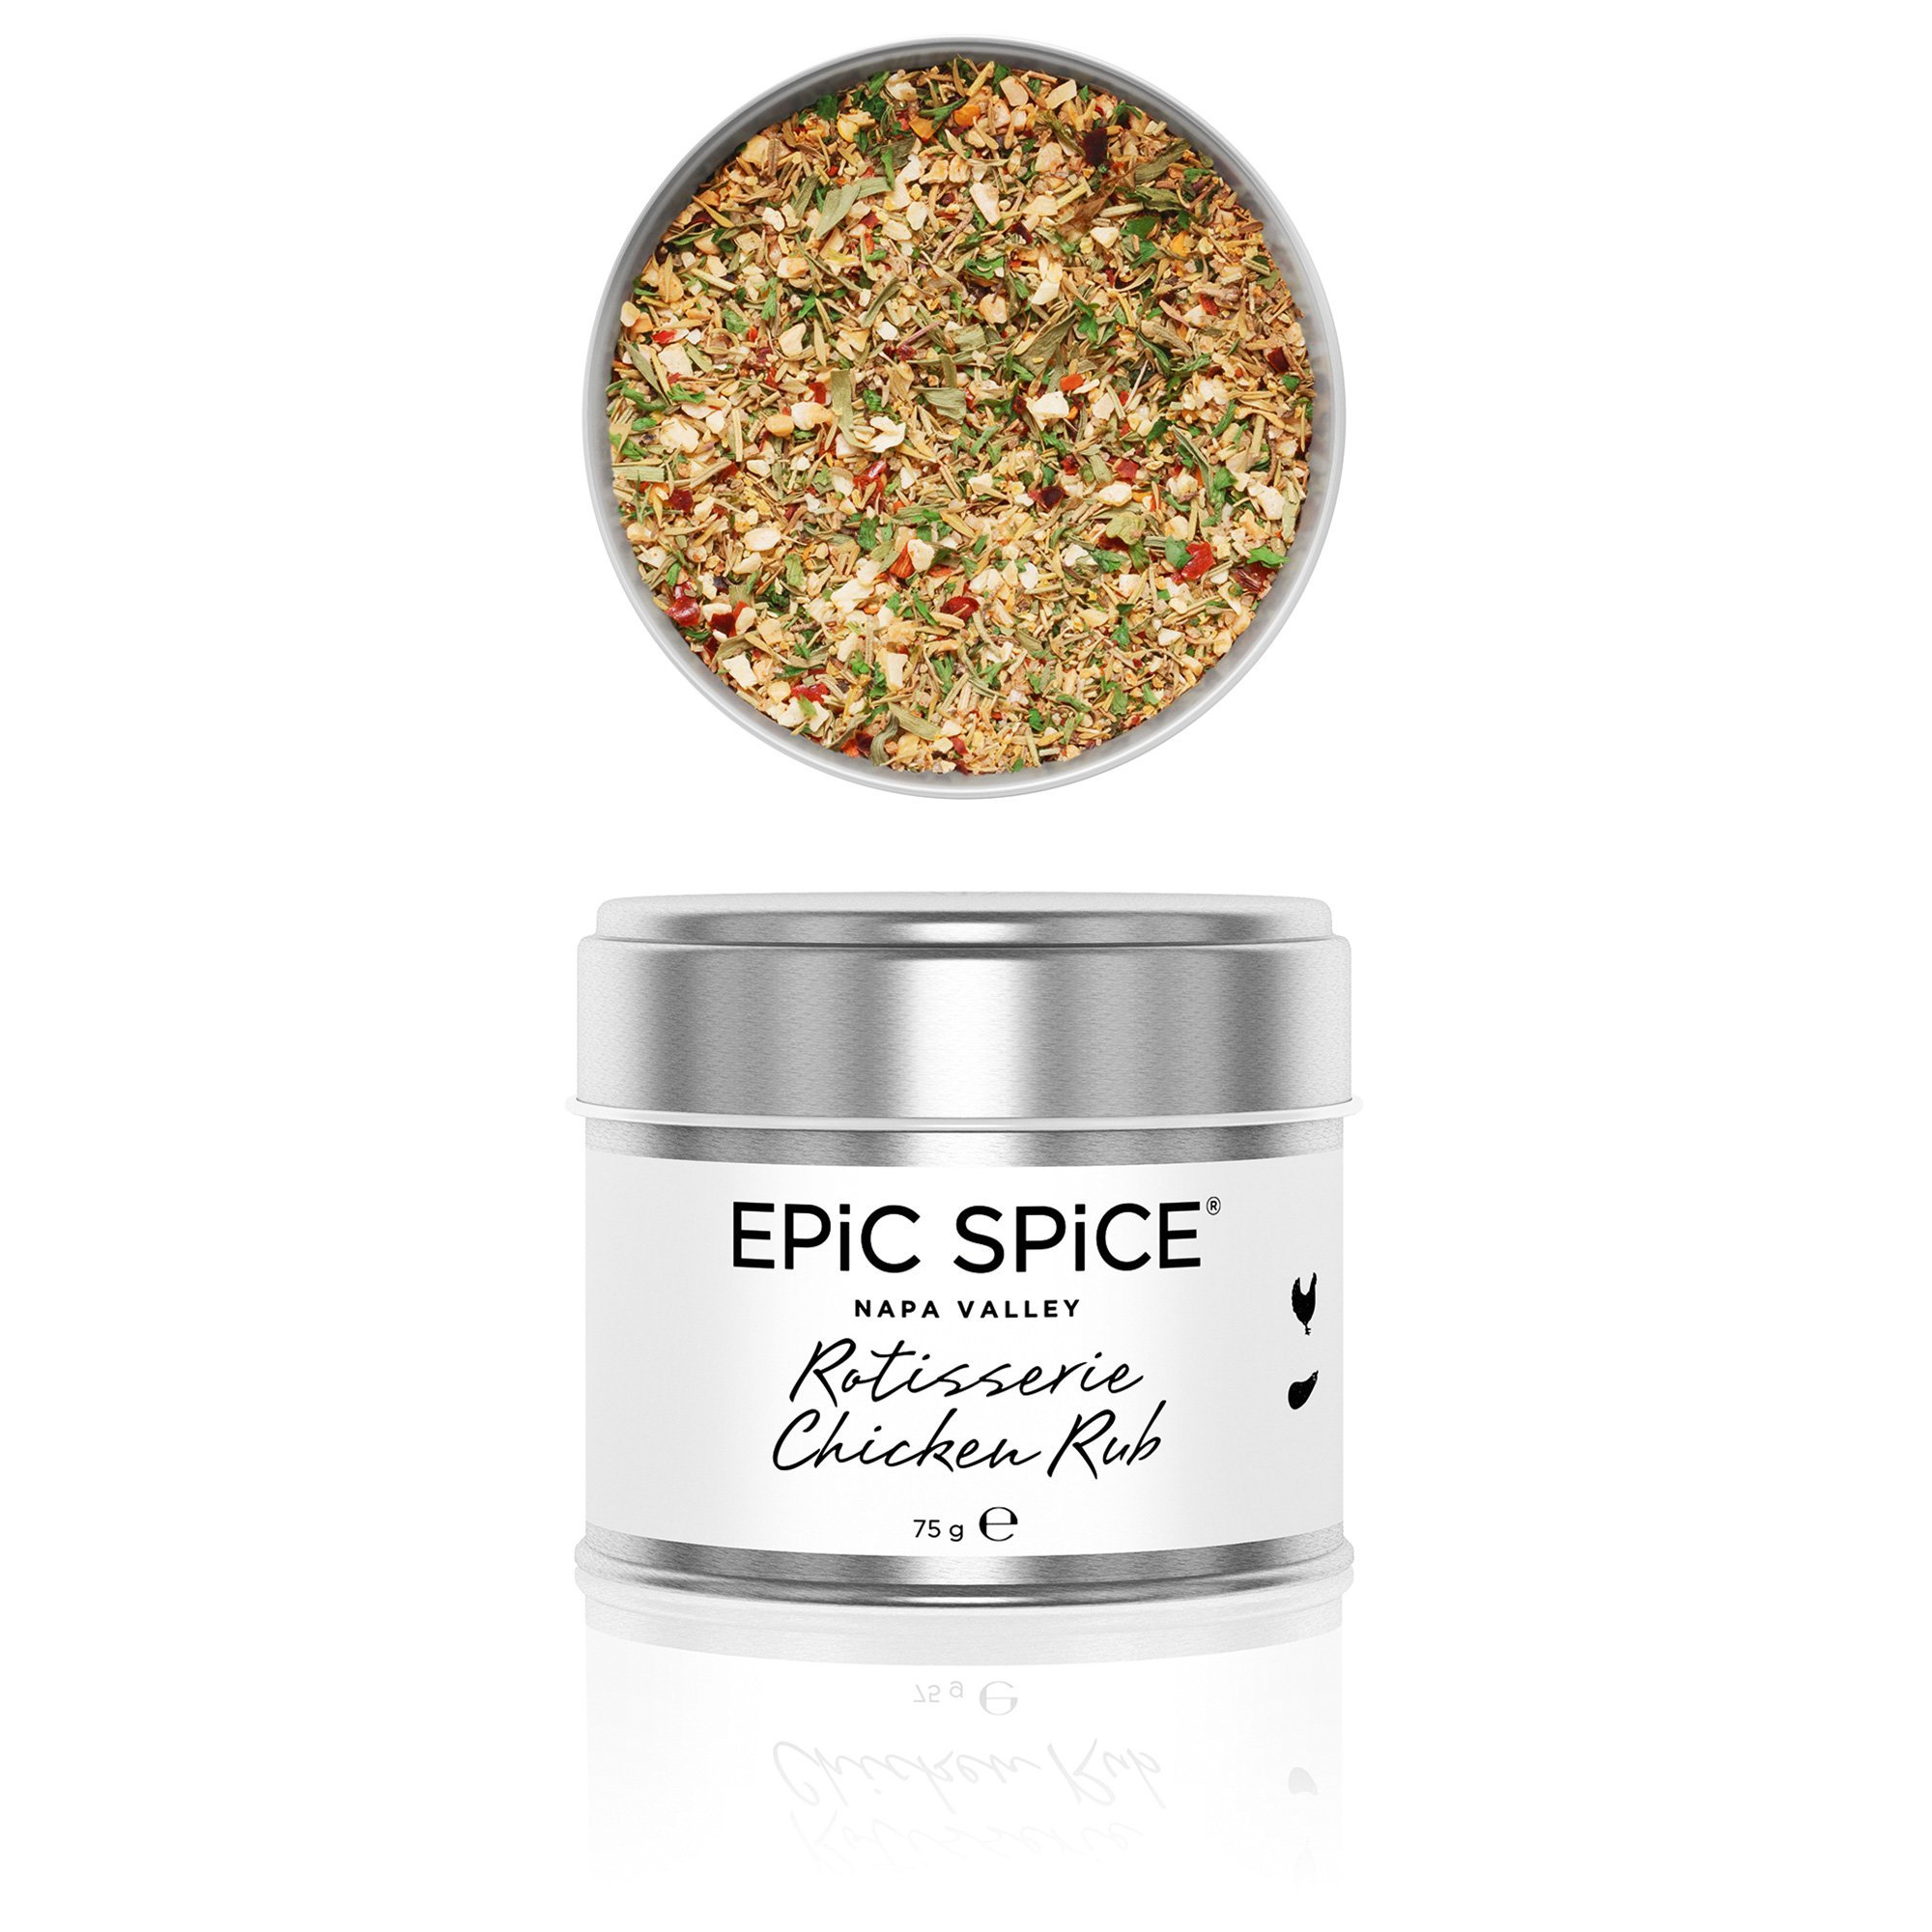 Epic Spice Rotisserie chicken rub, 75 g